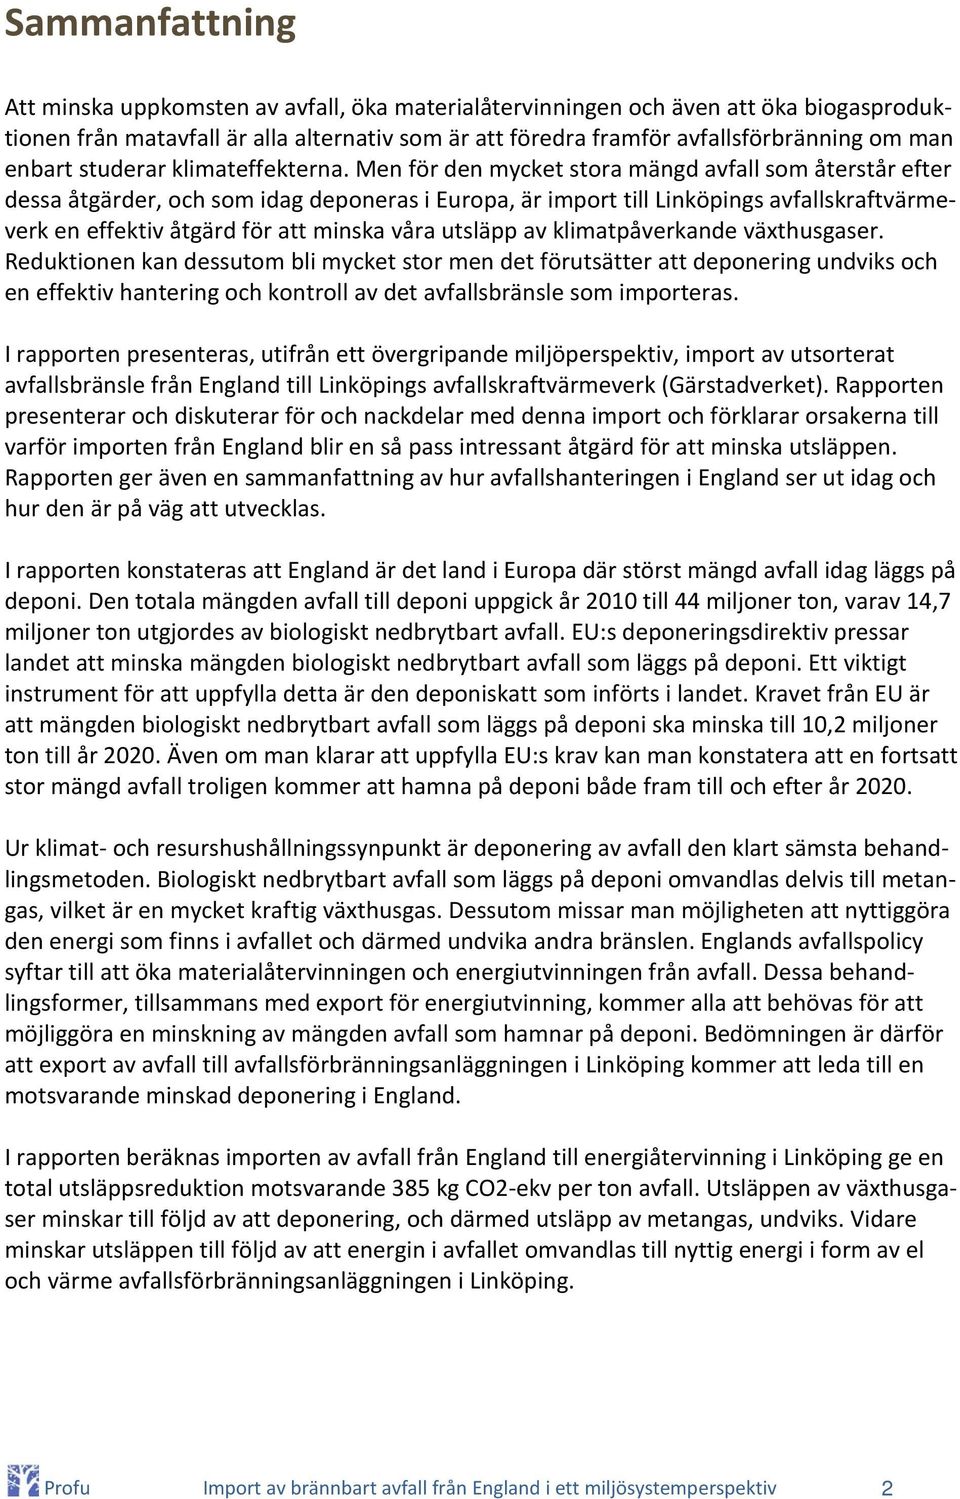 Men för den mycket stora mängd avfall som återstår efter dessa åtgärder, och som idag deponeras i Europa, är import till Linköpings avfallskraftvärmeverk en effektiv åtgärd för att minska våra